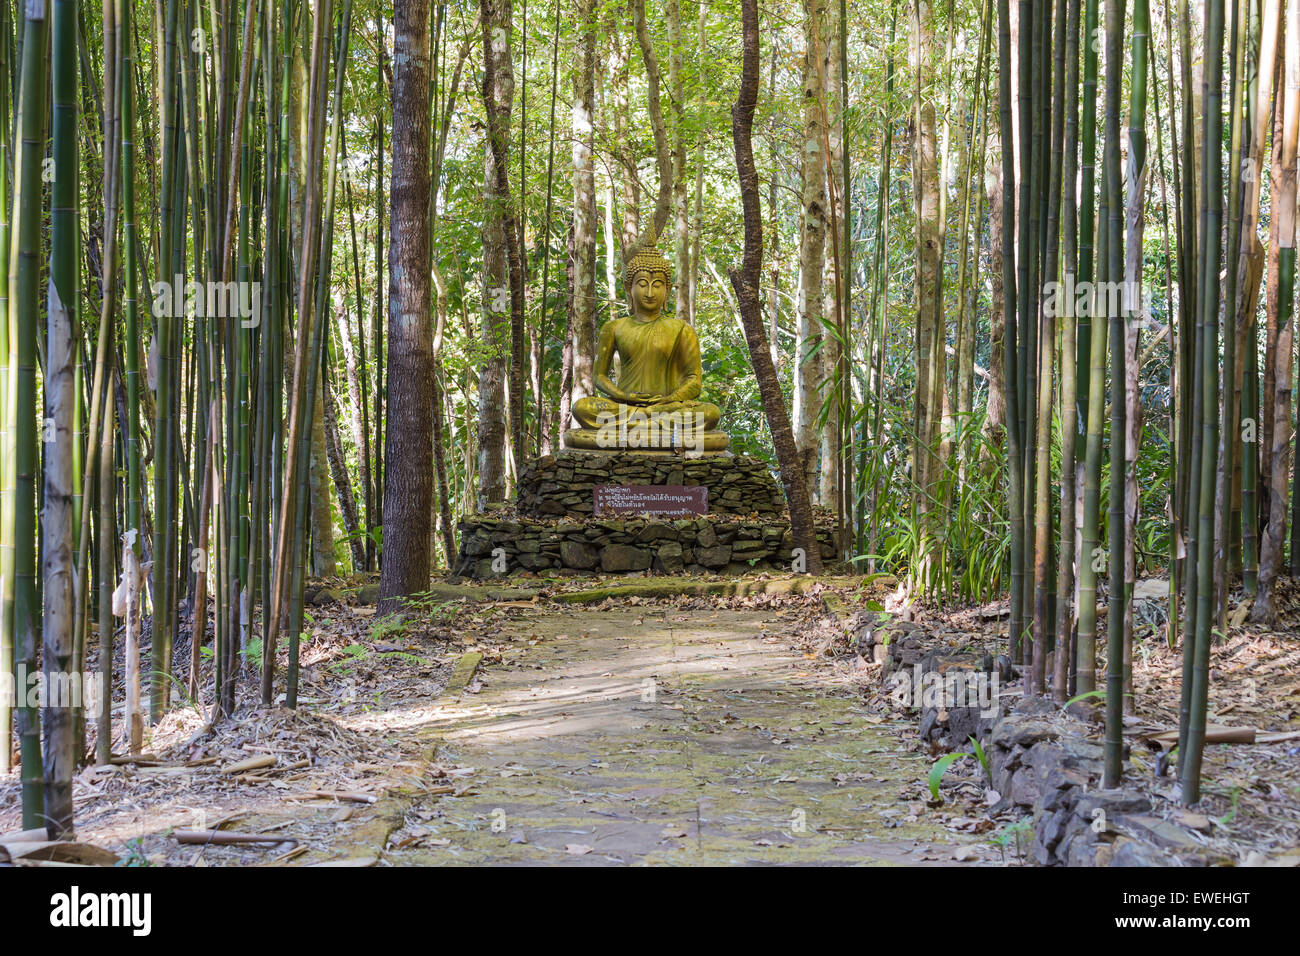 Buddha in the bamboo garden Stock Photo